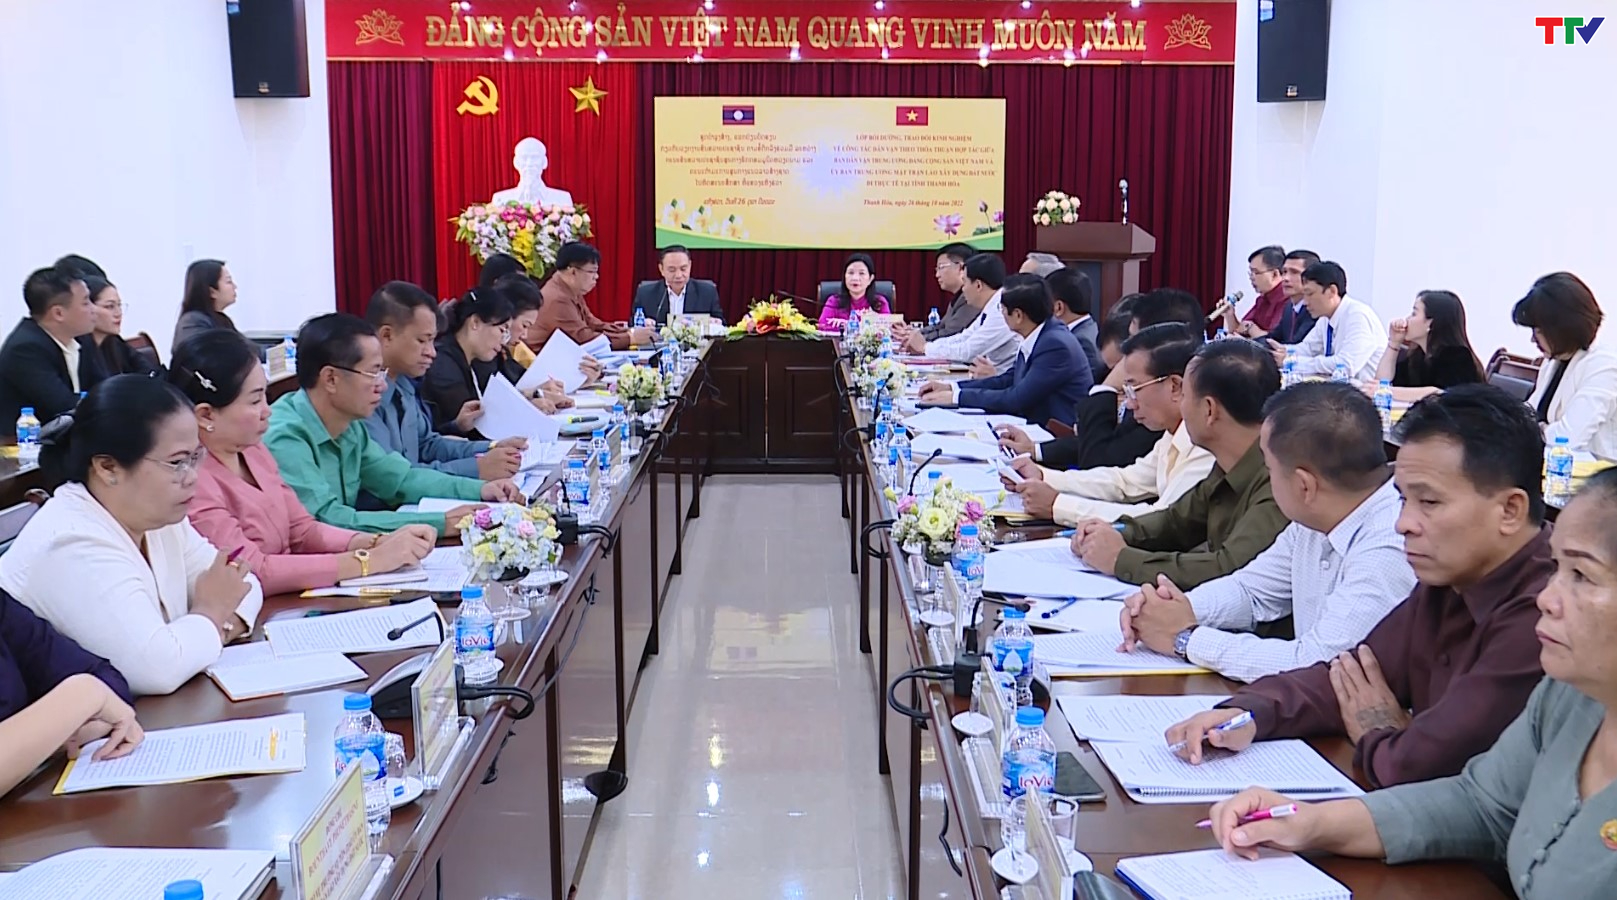 Trao đổi kinh nghiệm về công tác dân vận với Ủy ban Trung ương Mặt trận Lào xây dựng đất nước - Ảnh 3.